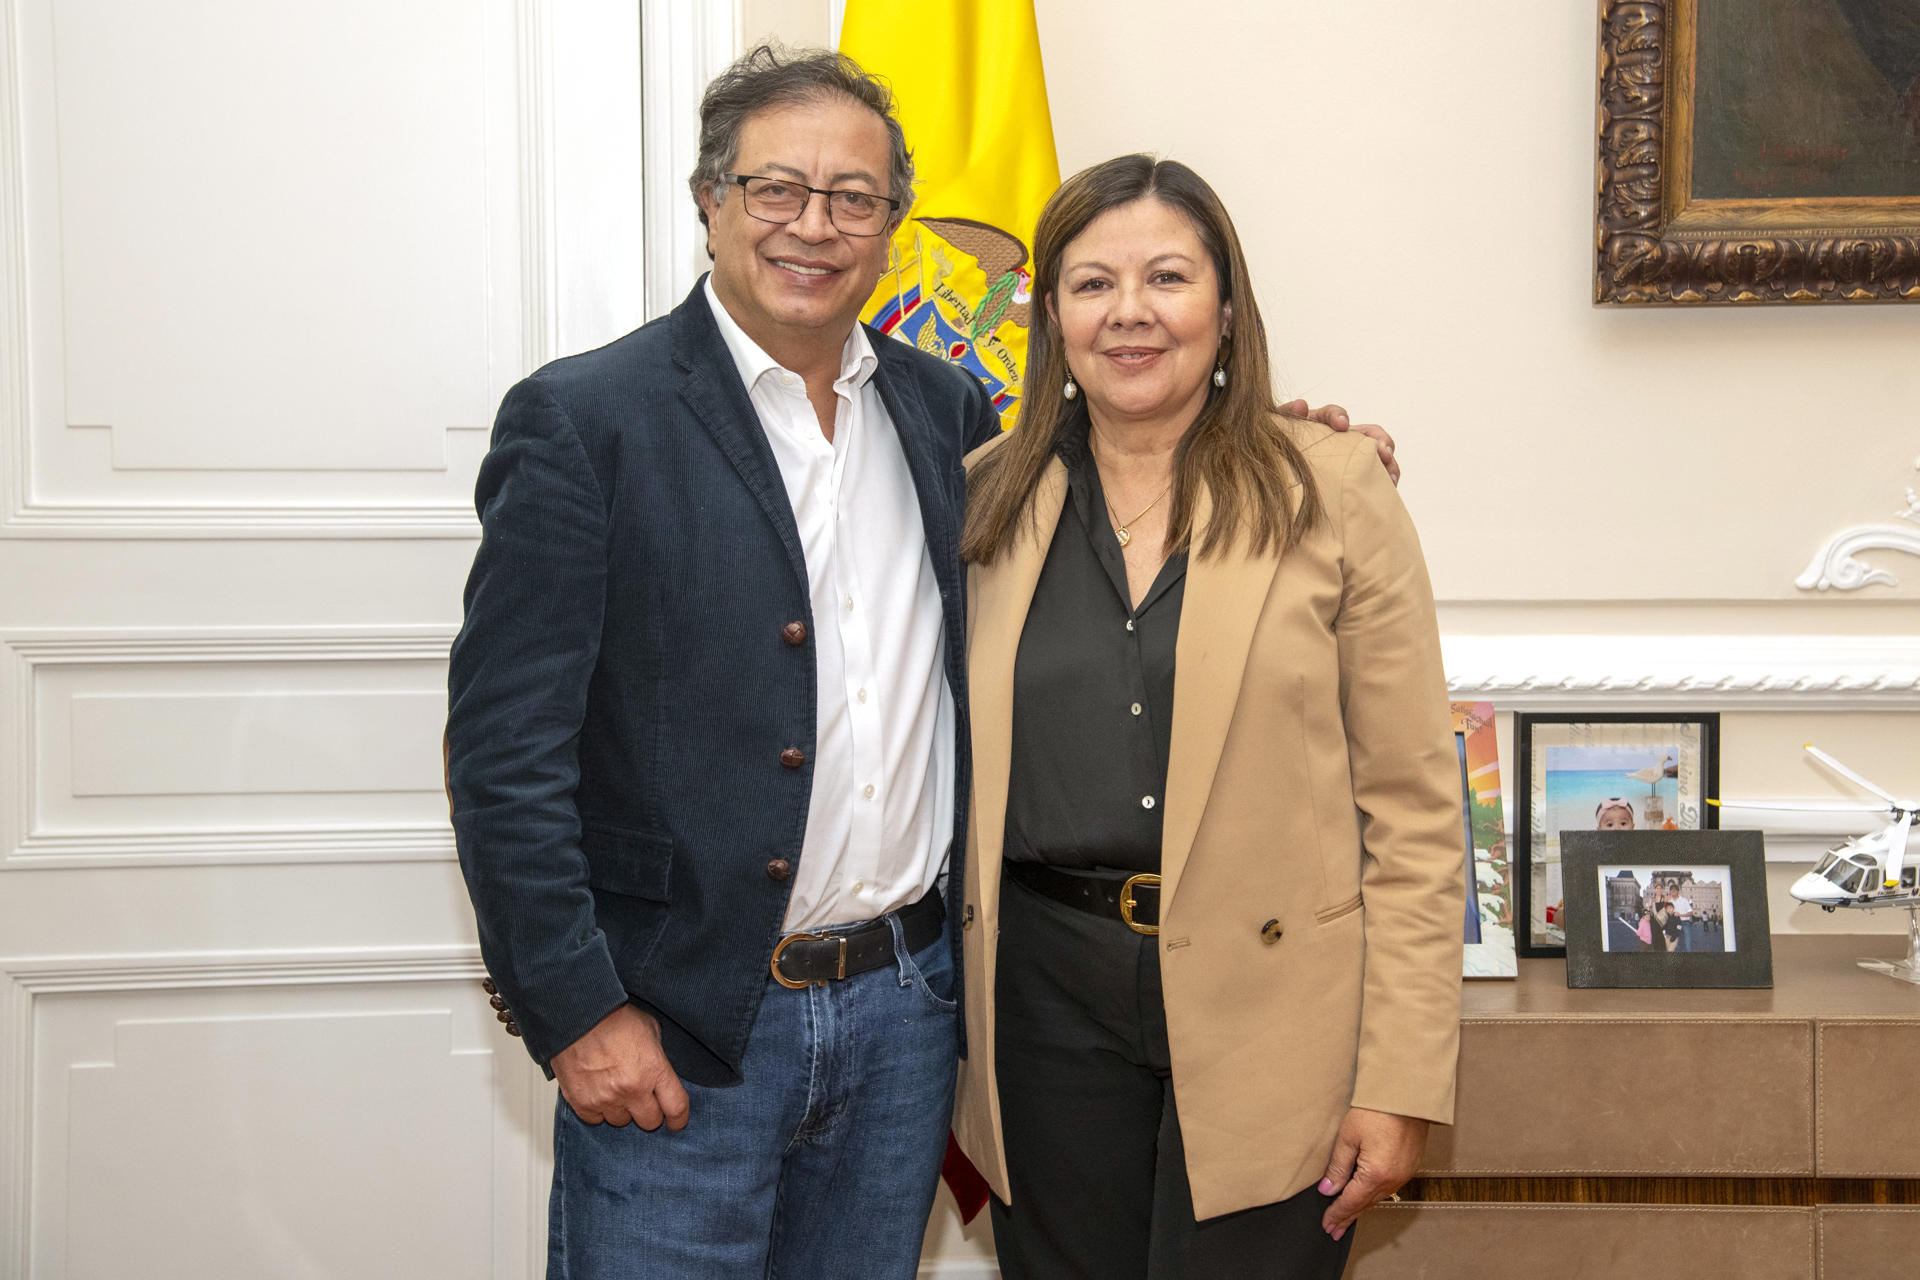 La nueva fiscal general Luz Adriana Camargo asume con el compromiso de respetar separación de poderes